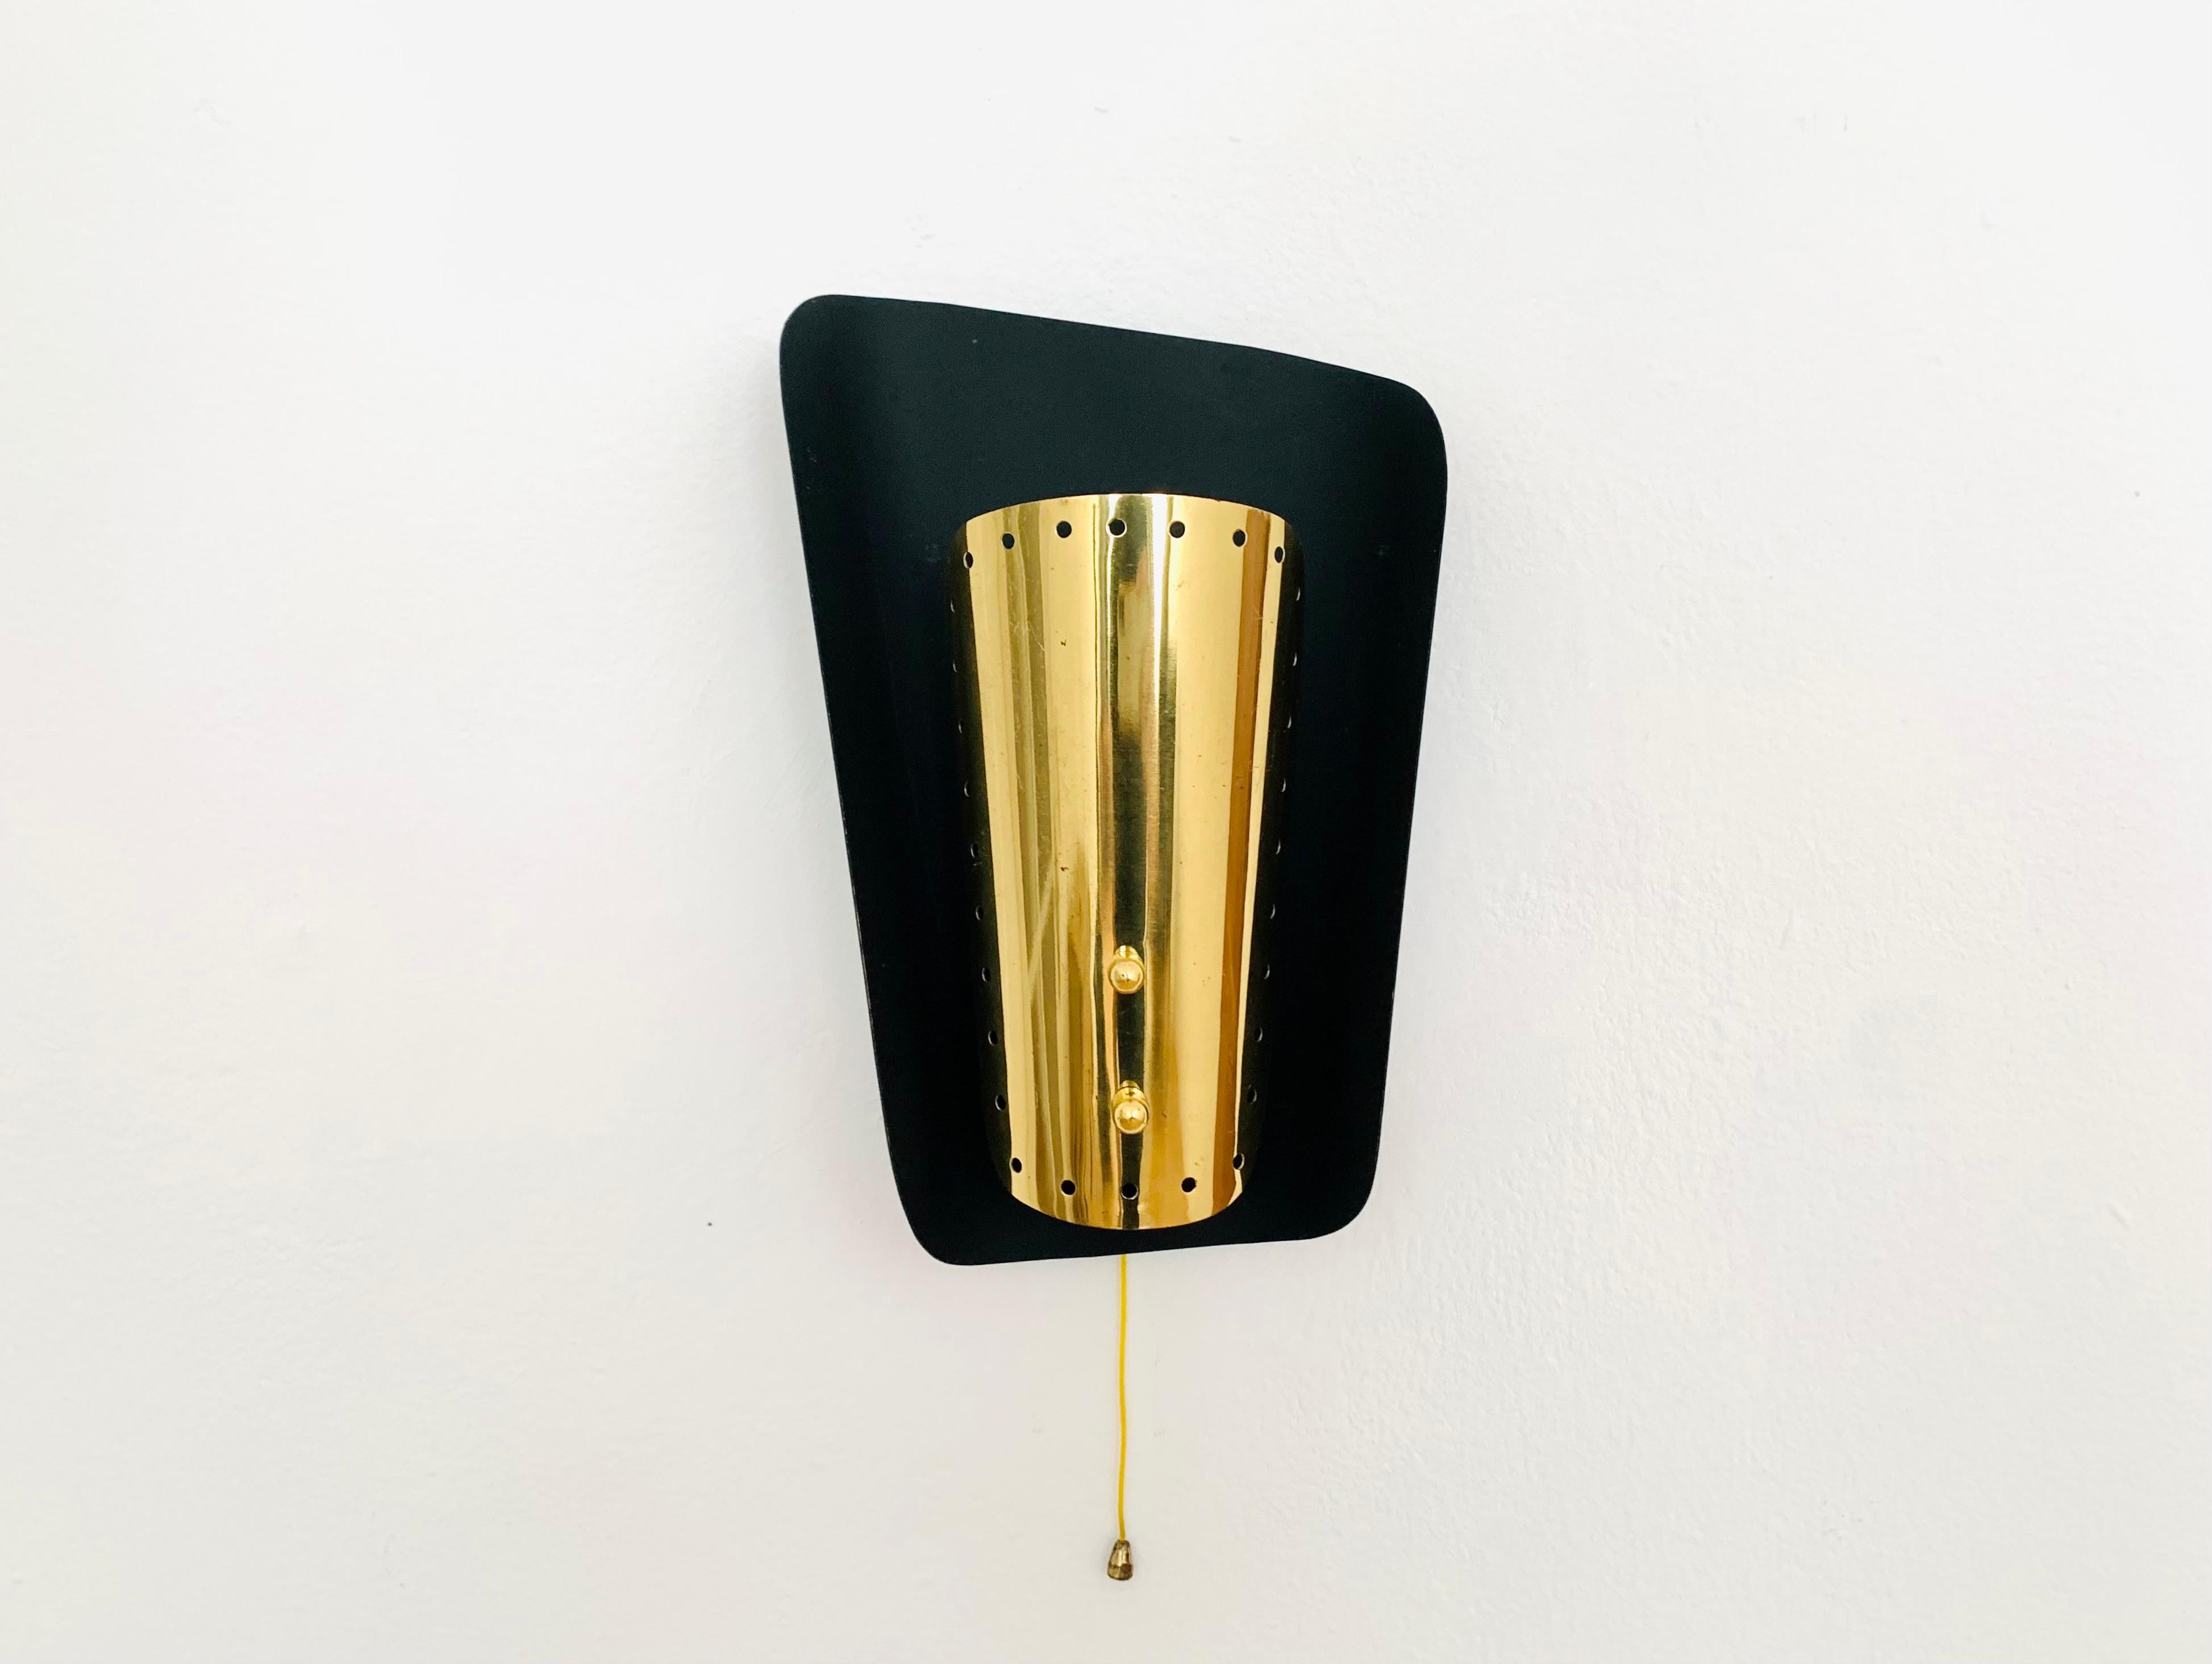 Sehr schöne italienische Wandlampe aus den 1950er Jahren.
Sehr elegante und klassische Form.
Die Löcher im goldenen Reflektor erzeugen ein spektakuläres Lichtspiel.

Bedingung:

Sehr guter Vintage-Zustand mit leichten altersentsprechenden